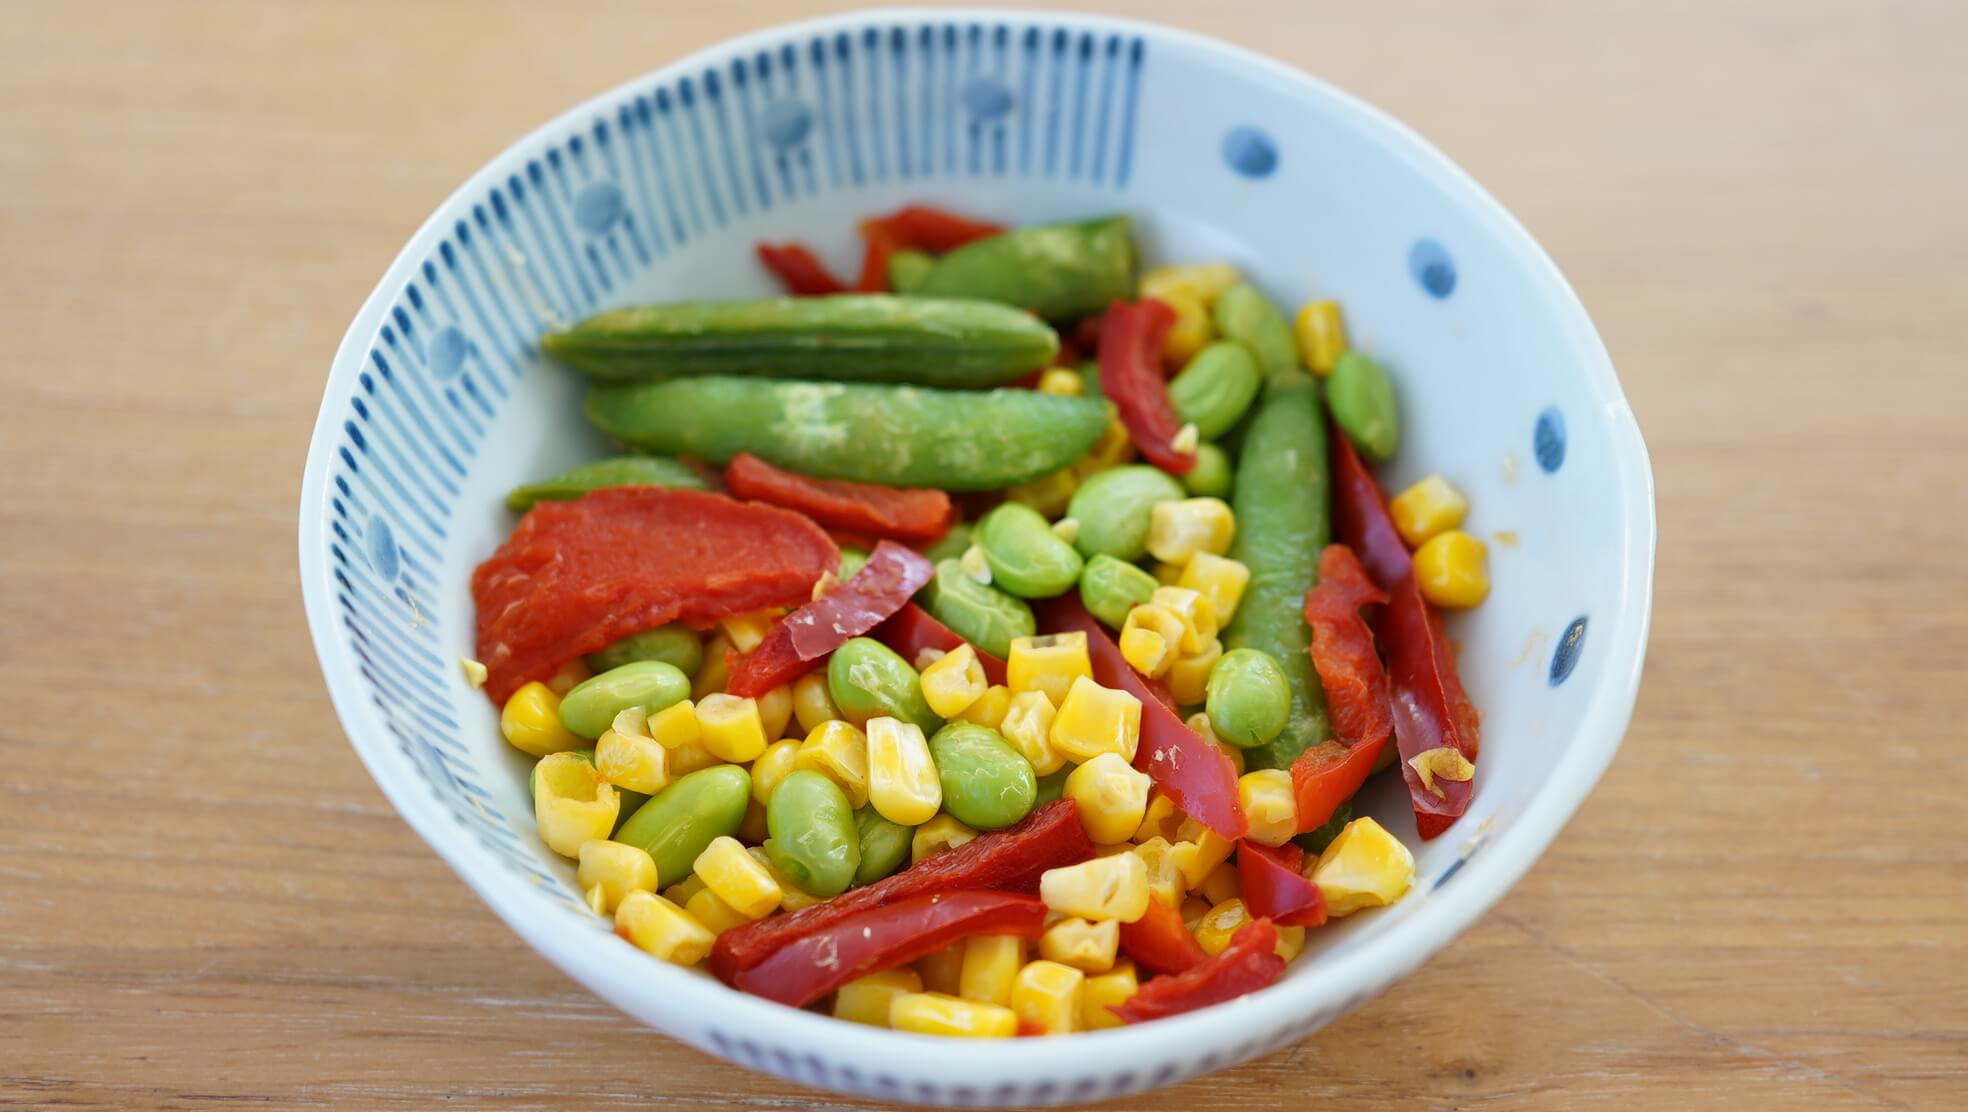 ピカールの冷凍食品「温野菜ミックス」を皿に盛りつけた写真